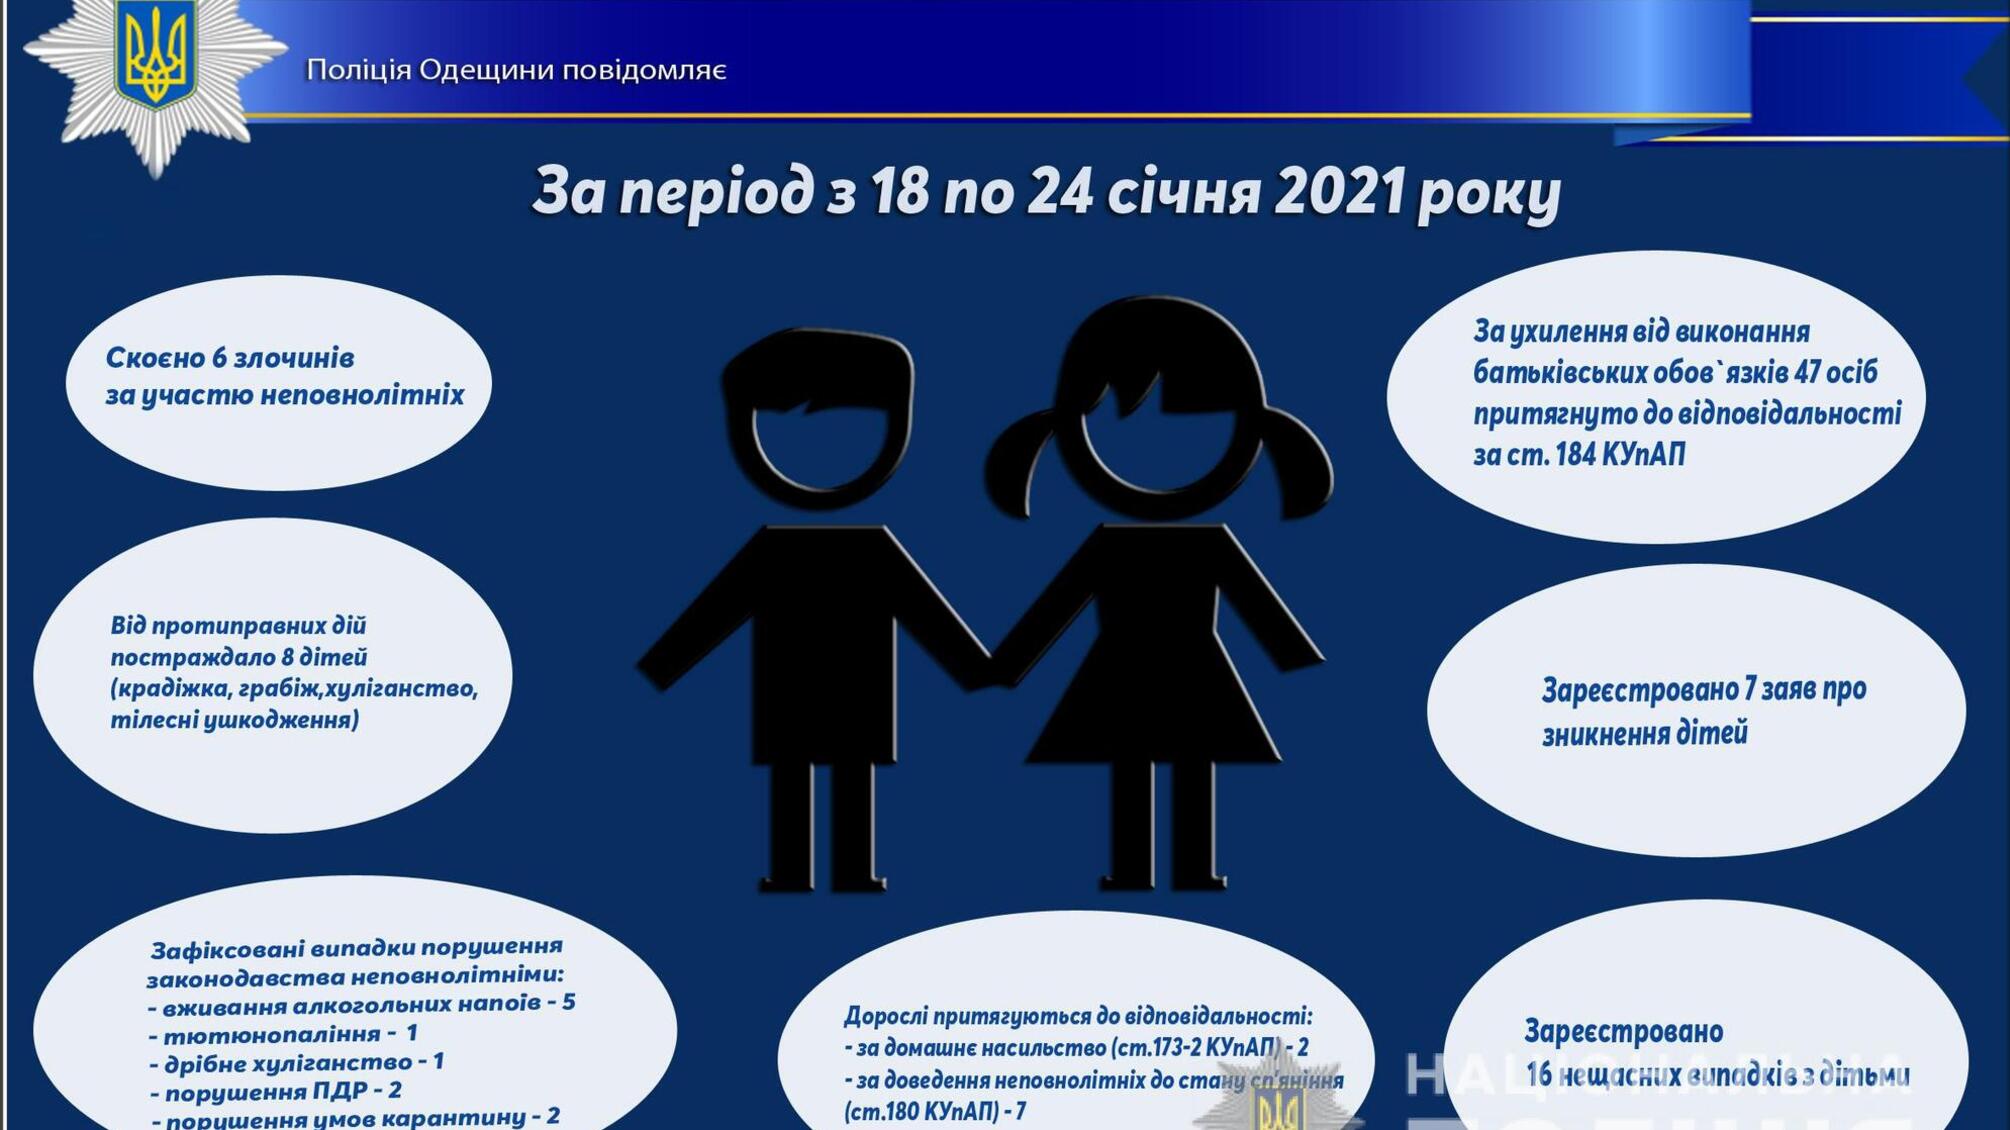 Про стан роботи поліції Одещини з протидії порушенням законодавства неповнолітніми та відносно них за період з 18 по 24 січня 2021 року